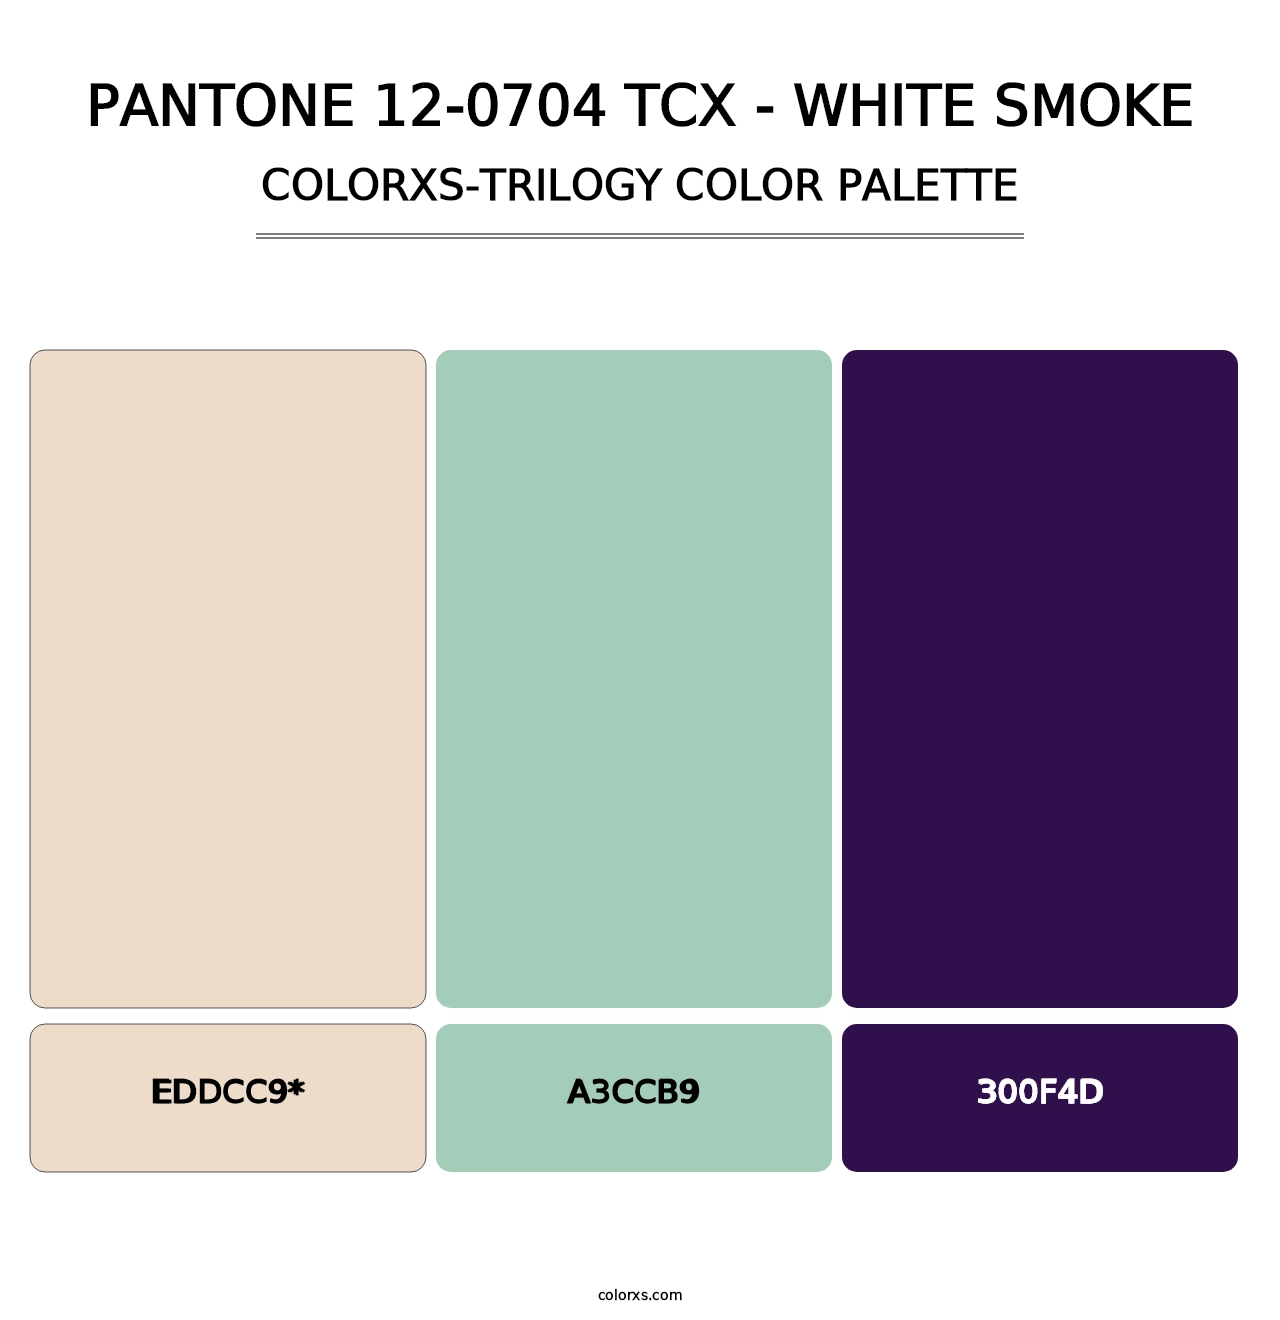 PANTONE 12-0704 TCX - White Smoke - Colorxs Trilogy Palette